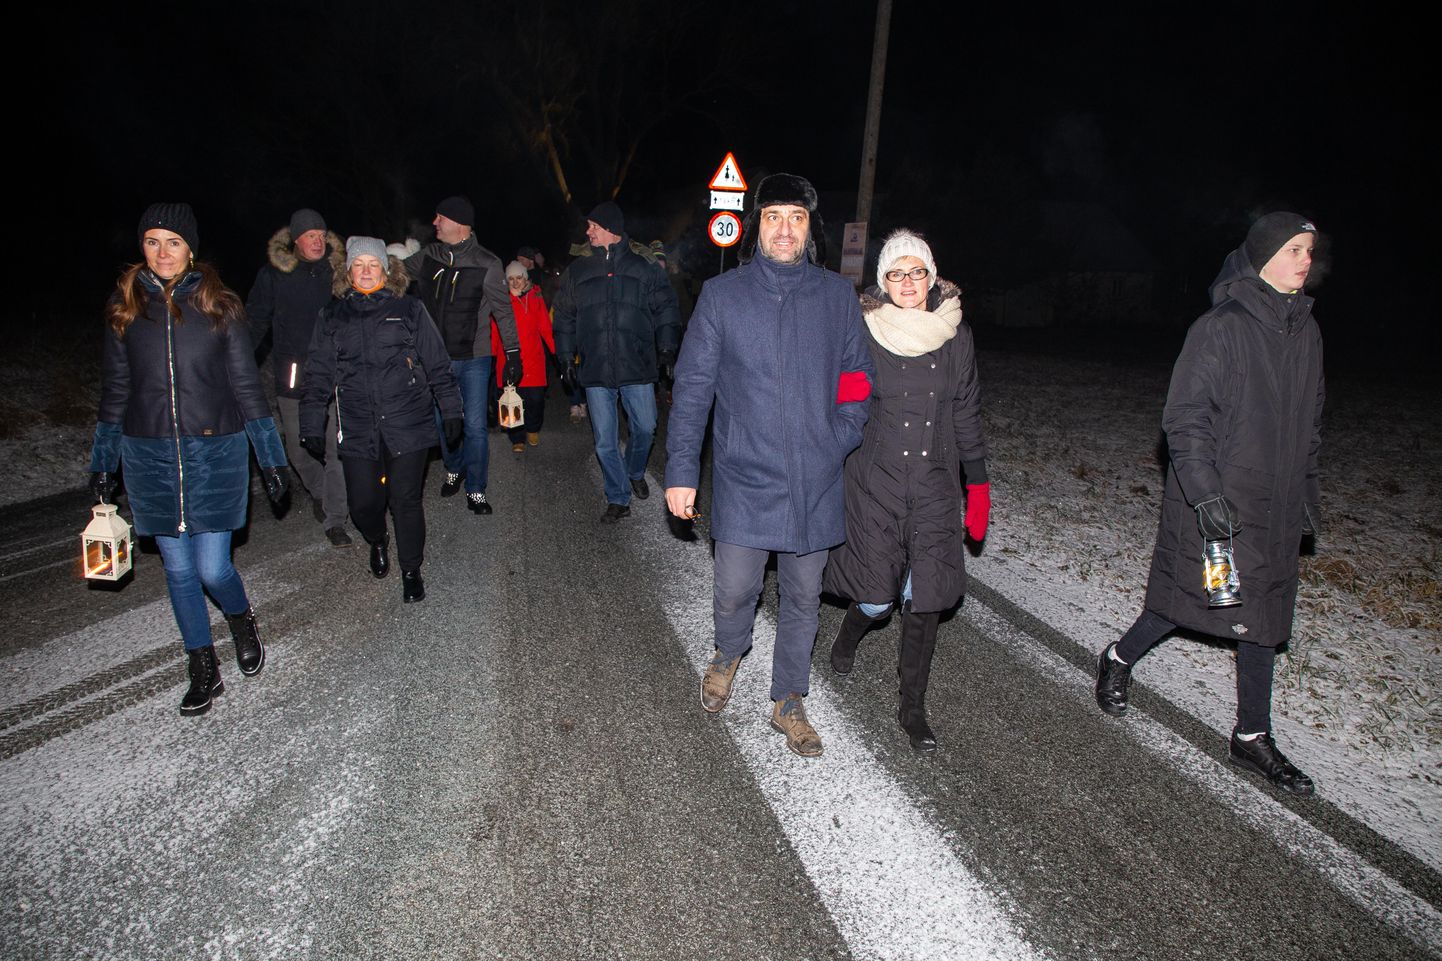 Mullusel Valgma küla valgusretkel jalutas külarahvas koos külalistega koos läbi küla. Nüüd paluvad korraldajad koroonaaja reegleid järgides inimestel liikuda hajutatult.